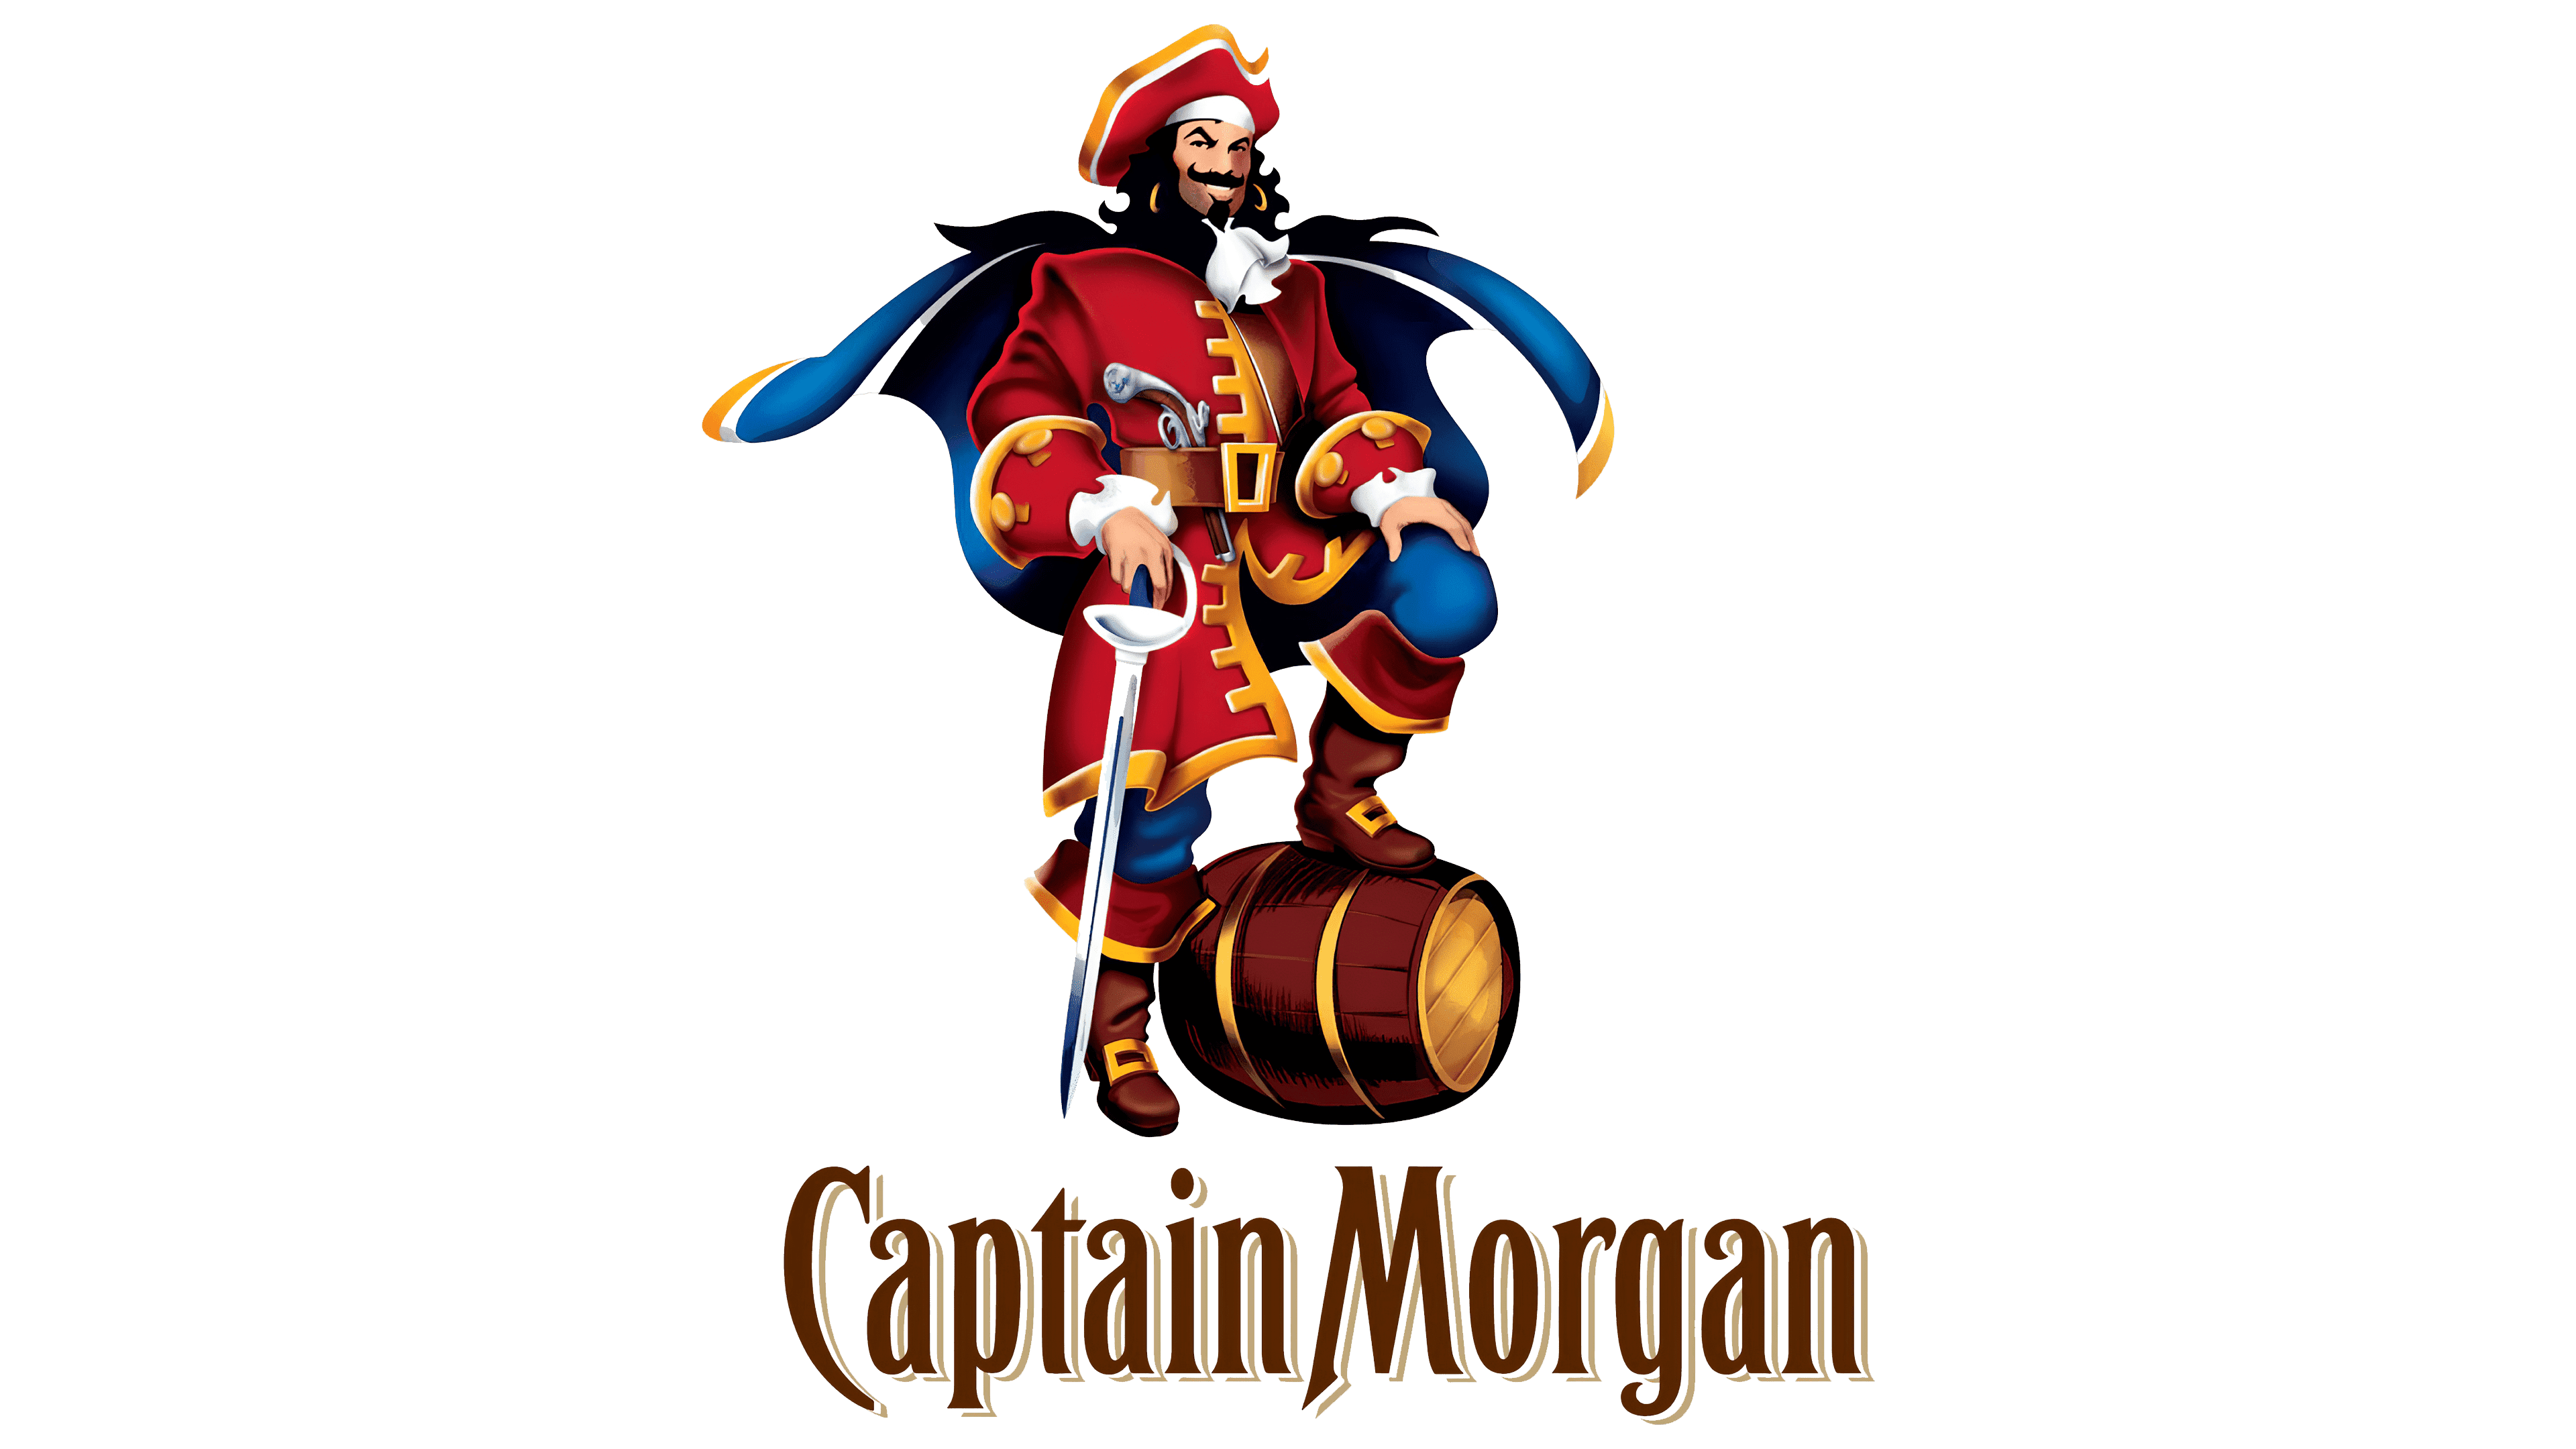 Captain morgan mascot